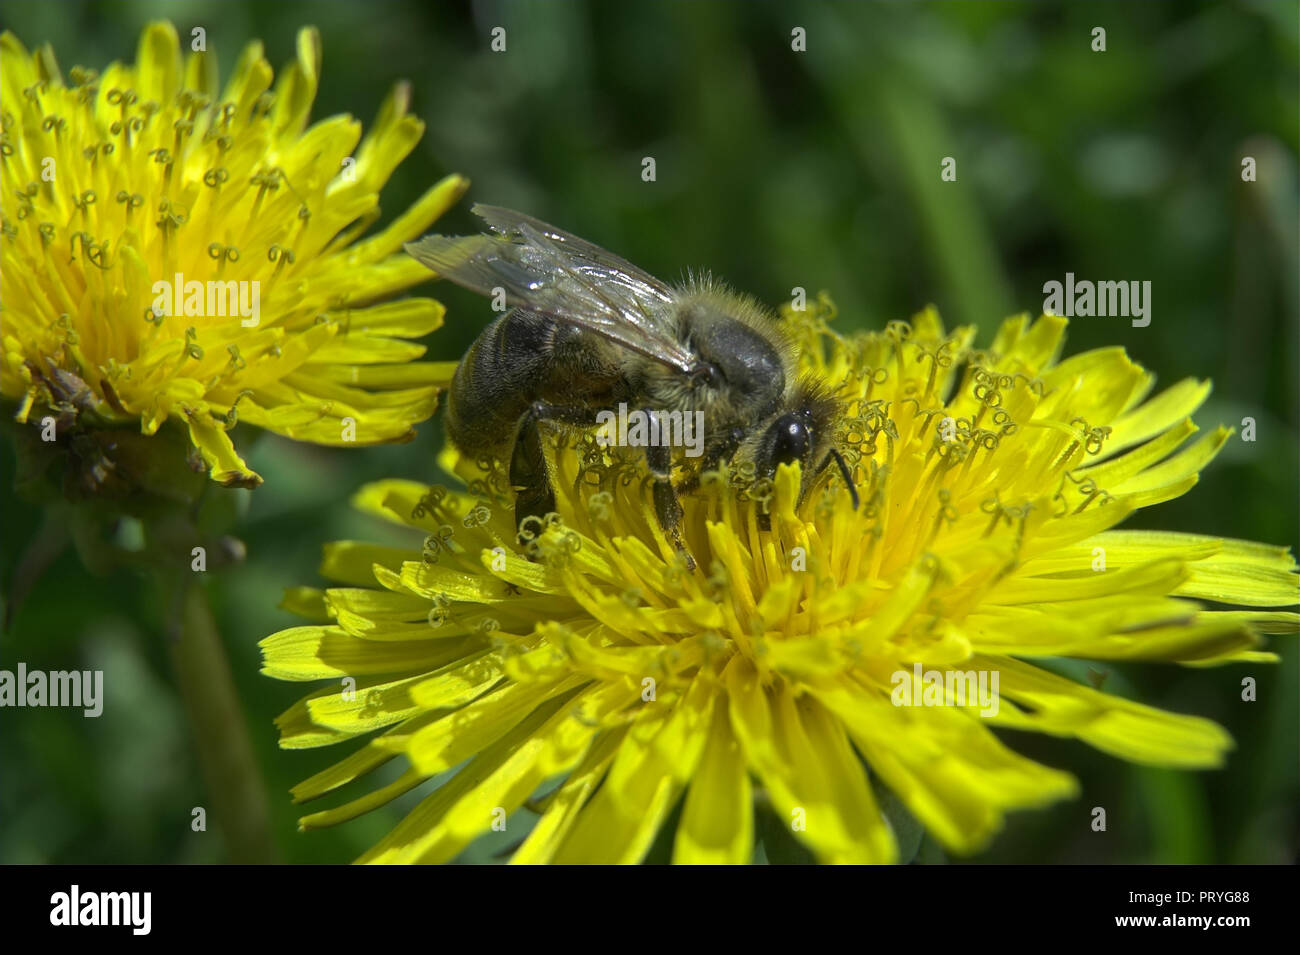 A worker bee collects nectar from a dandelion. Before honey arises. Pszczoła robotnica zbiera nektar z mniszka. Zanim powstanie miód. Apis mellifera. Stock Photo